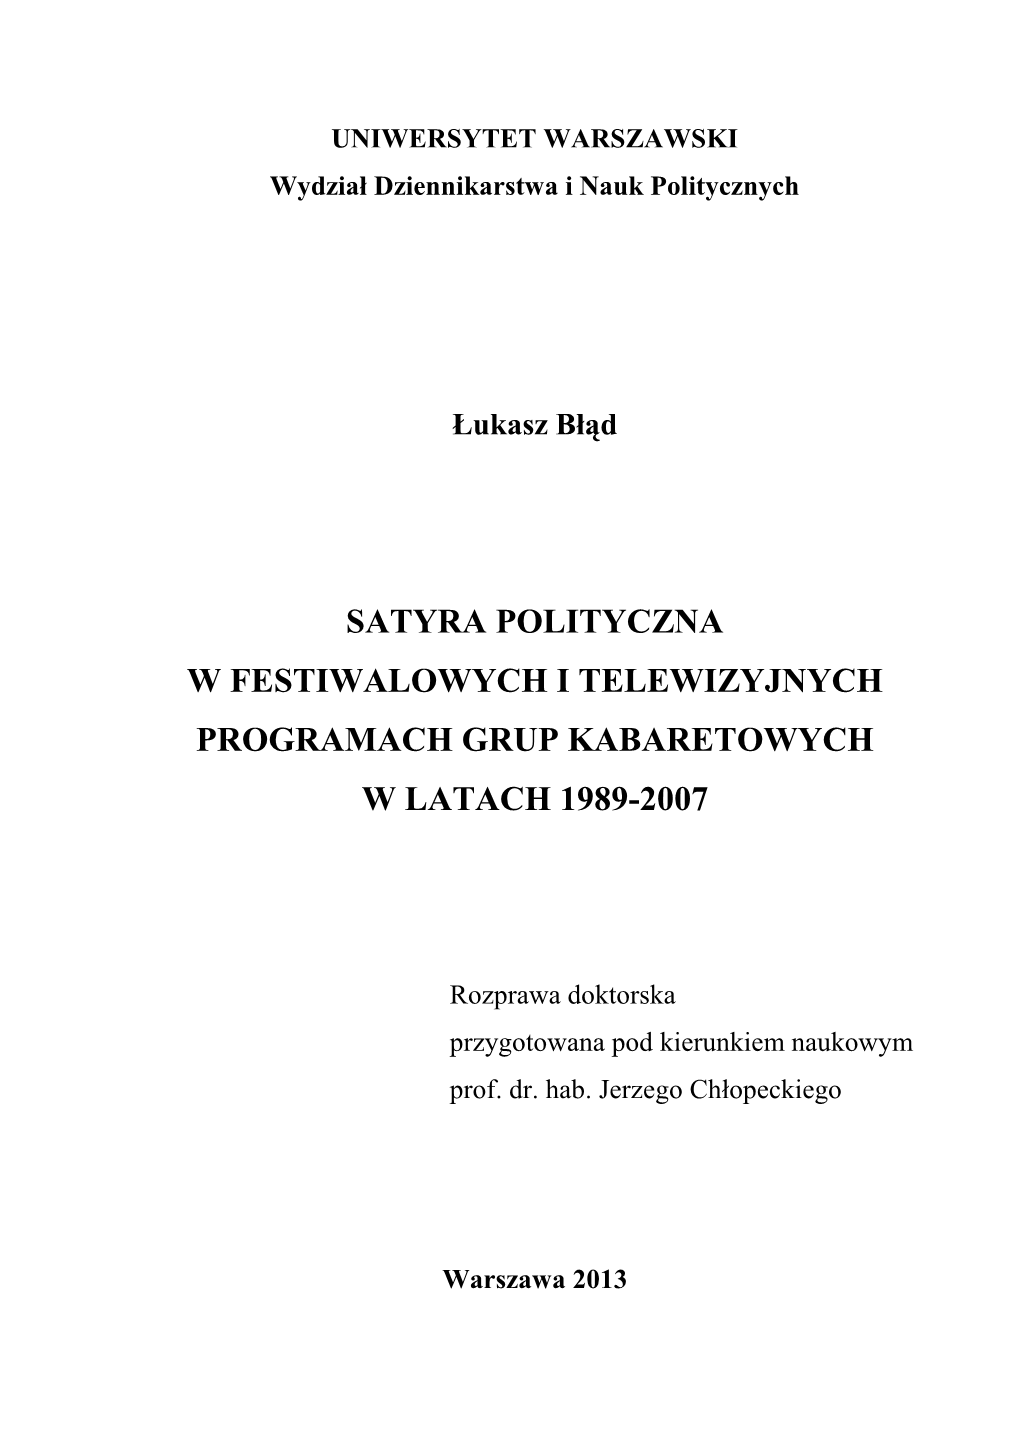 Satyra Polityczna W Festiwalowych I Telewizyjnych Programach Grup Kabaretowych W Latach 1989-2007